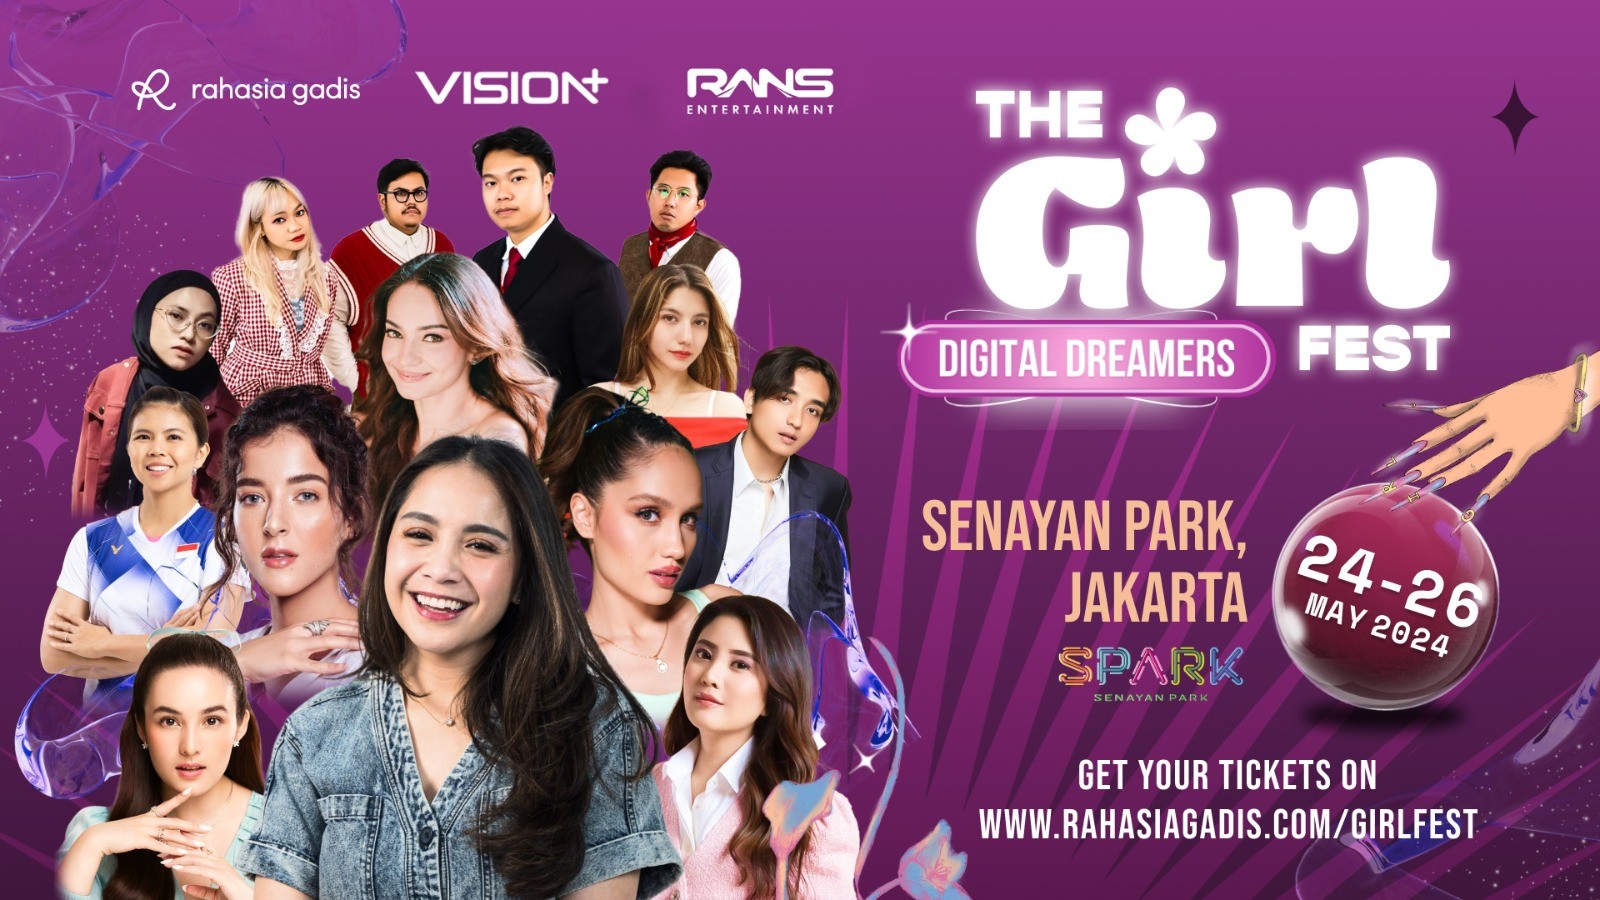 The Girl Fest Hadirkan Cast Vision+ Originals Kartu Keluarga dan Potret, Catat Tanggalnya